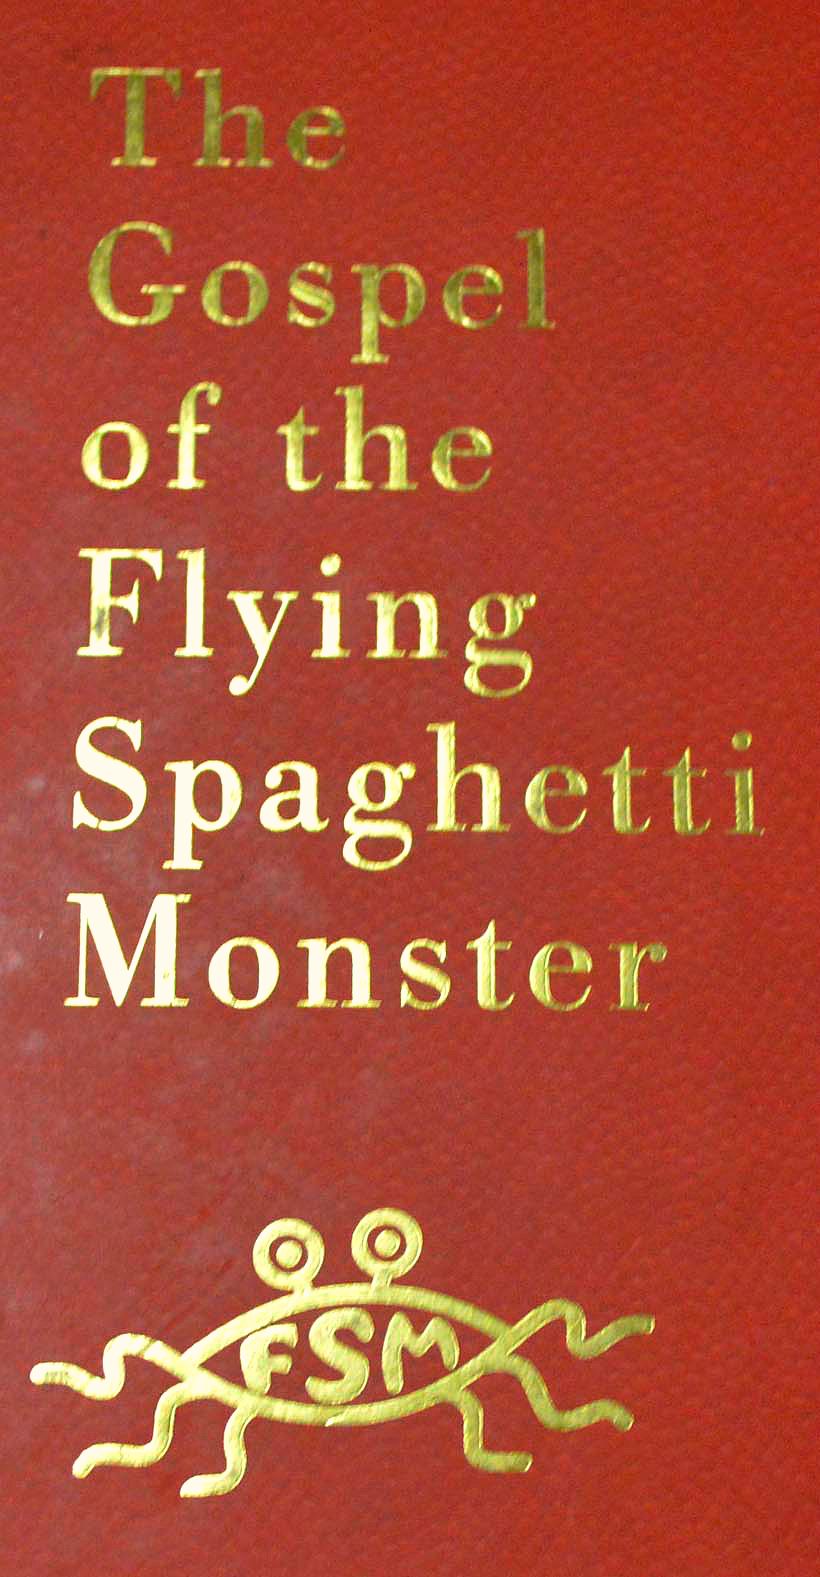 newgospel-of-the-flying-spaghetti-monster.jpg